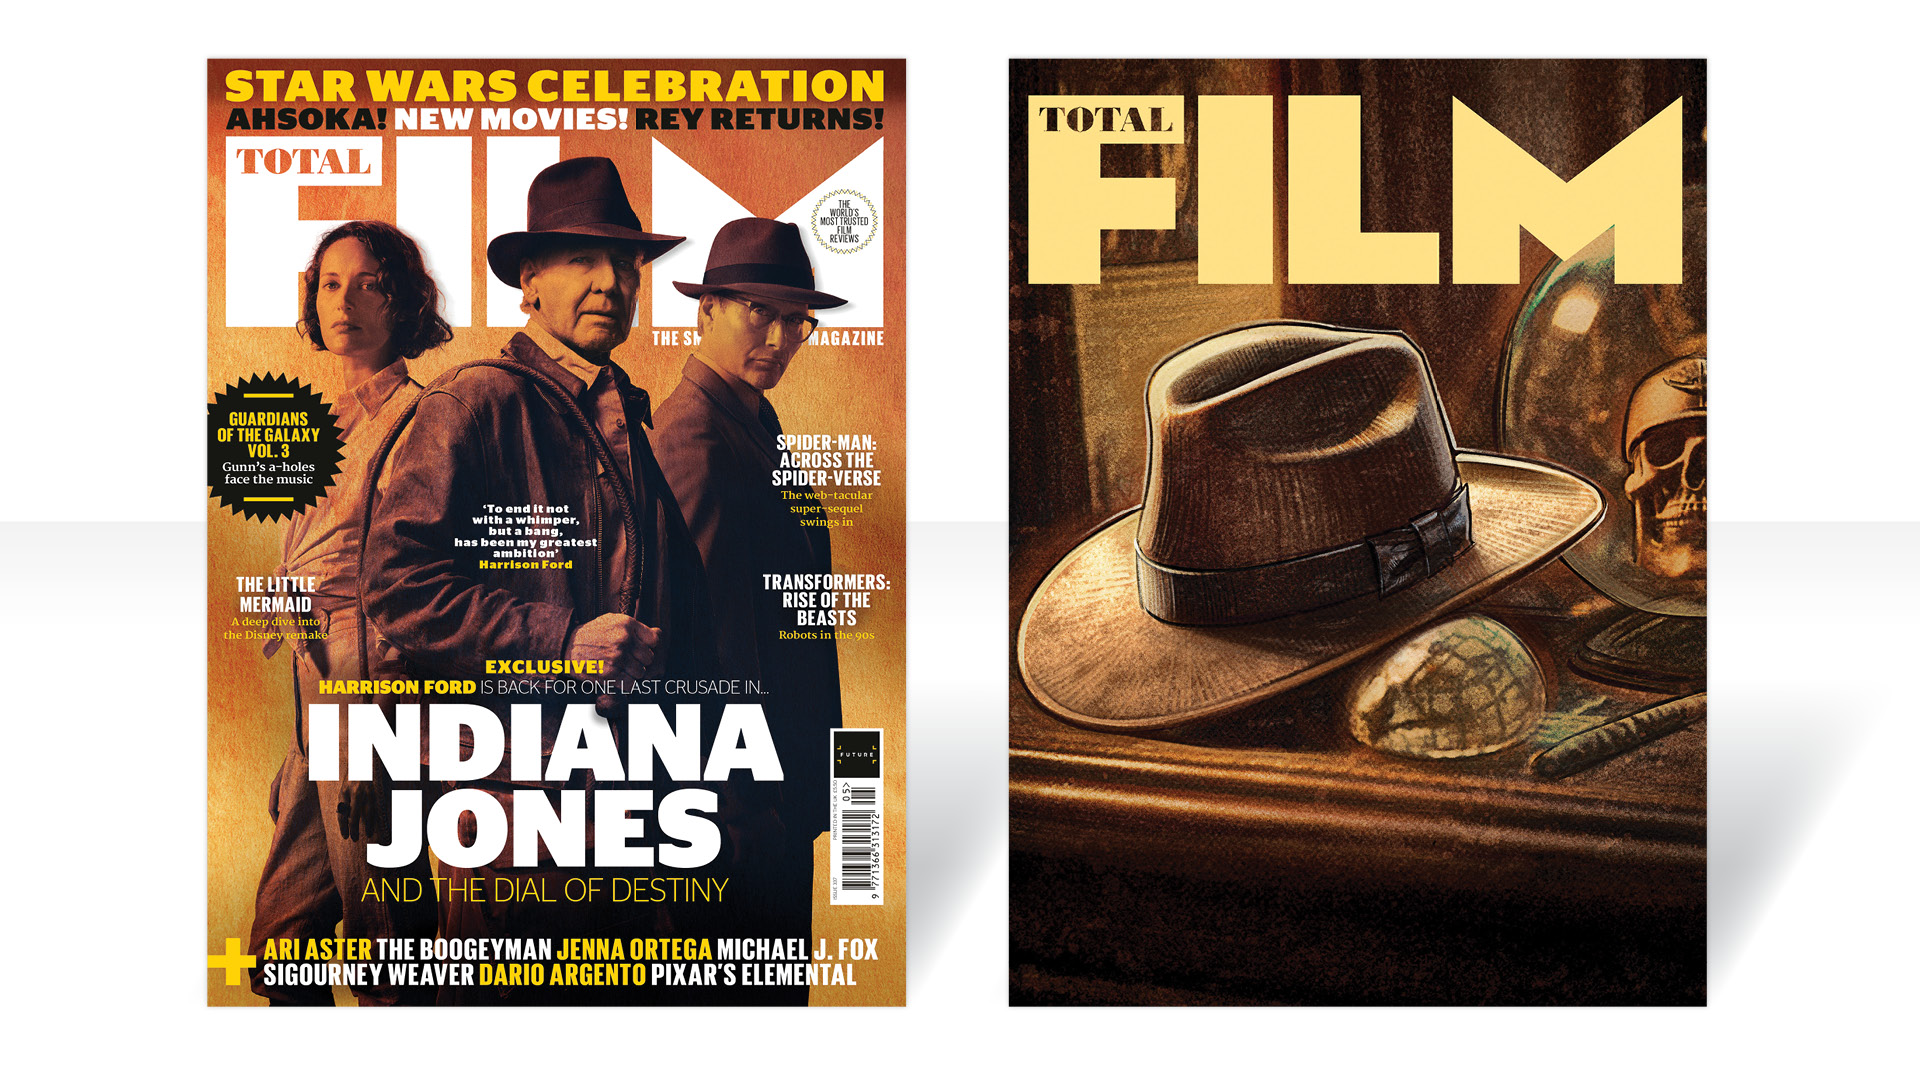 Indiana Jones-Cover von Total Film.